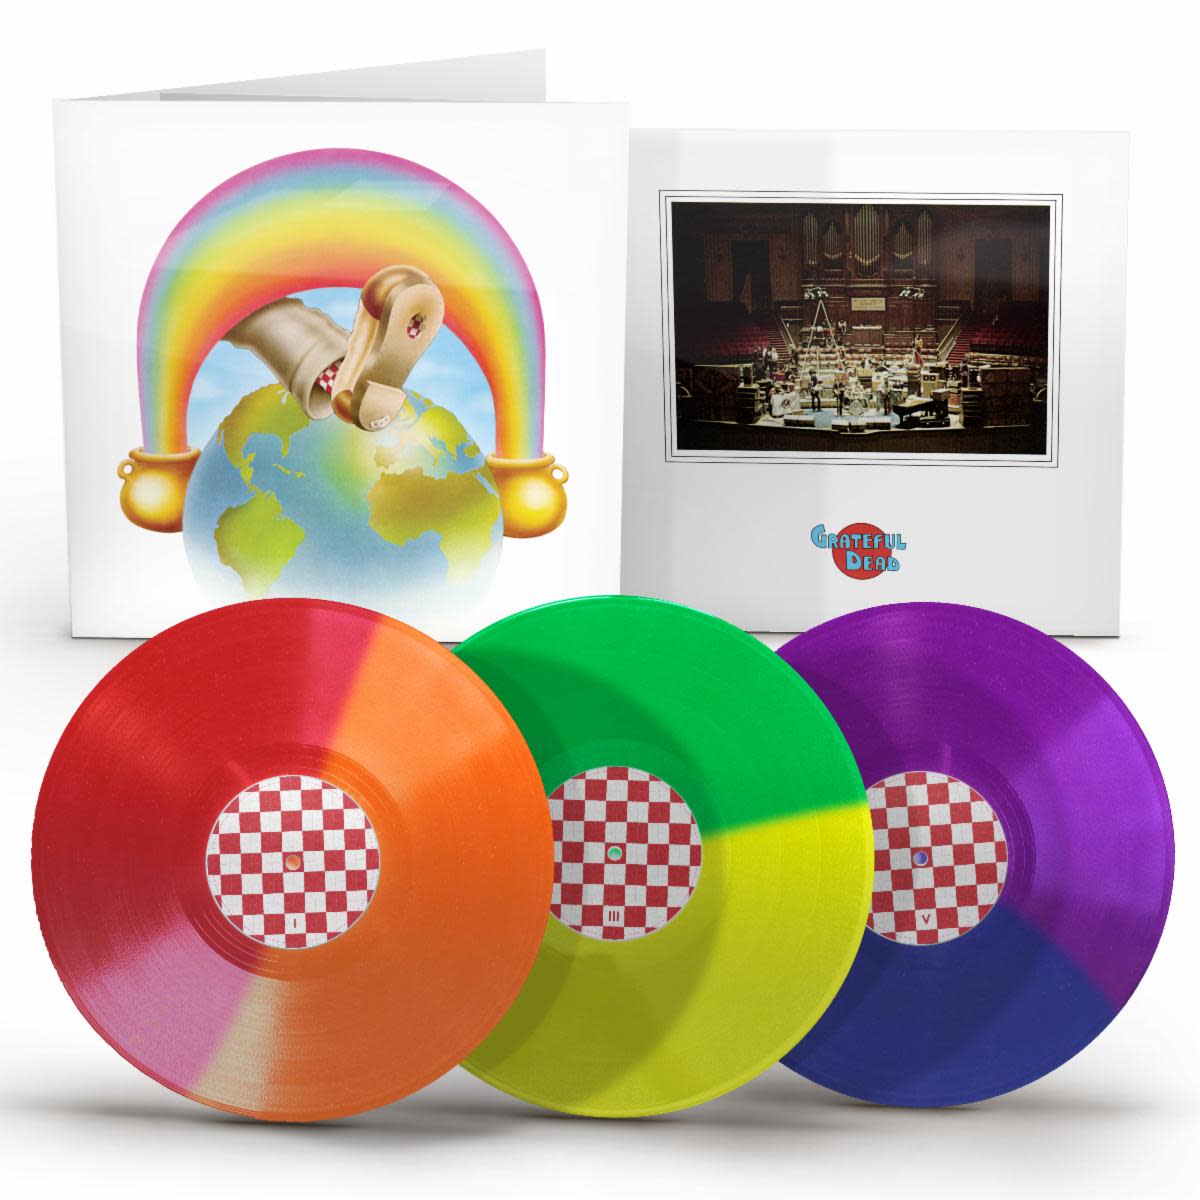 Grateful Dead "Europe '72" 50th Anniversary celebrated with massive 24-LP box set - Goldmine Magazine: Record Collector & Music Memorabilia